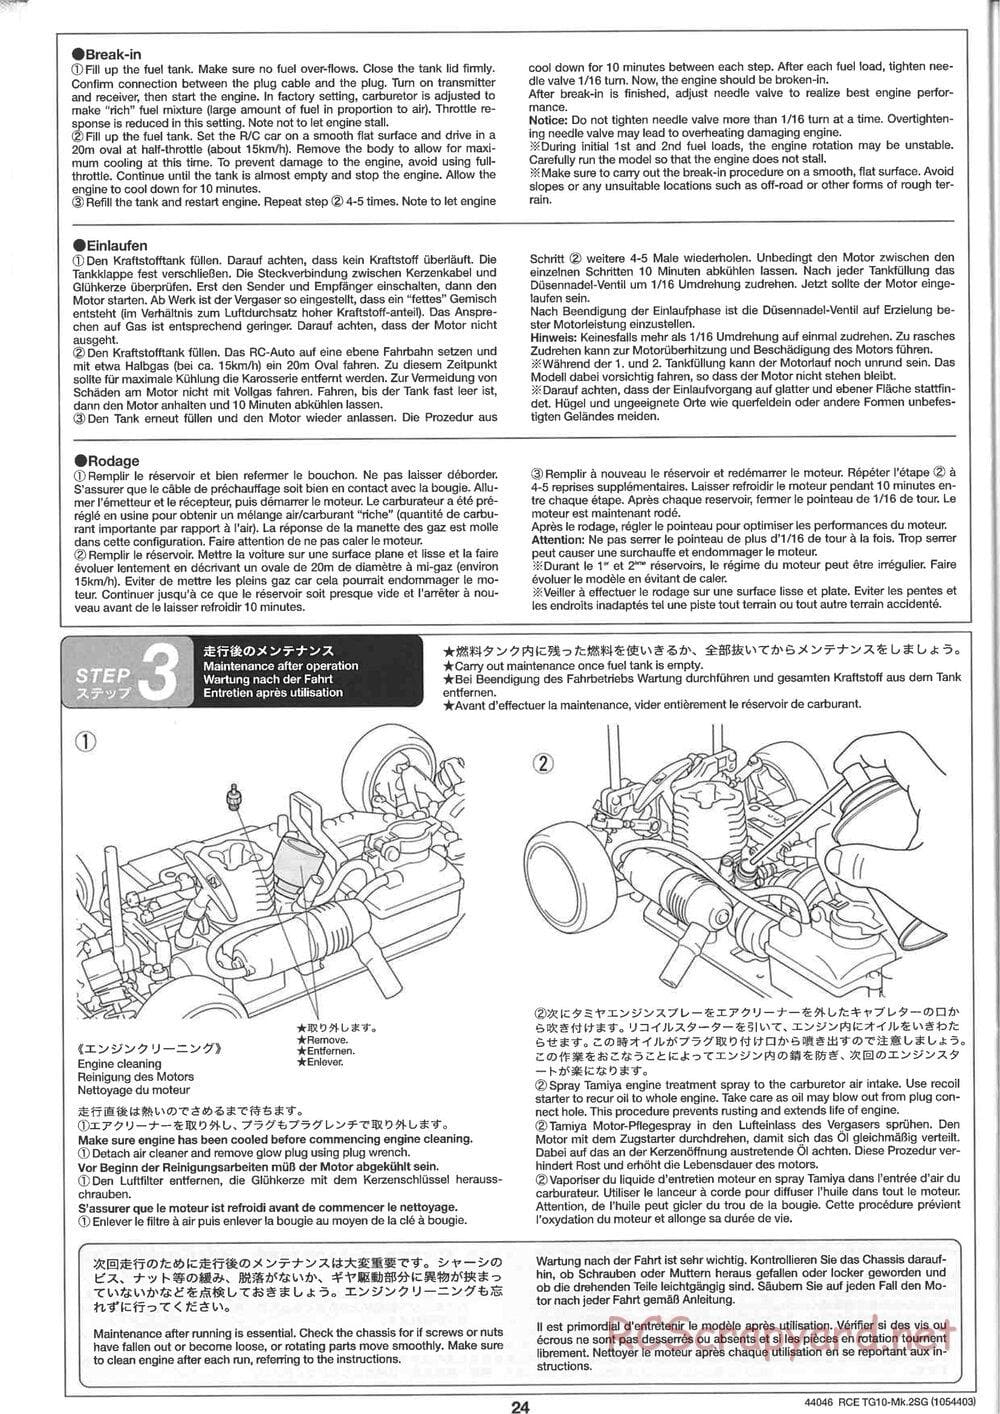 Tamiya - TG10 Mk.2SG Chassis - Manual - Page 24